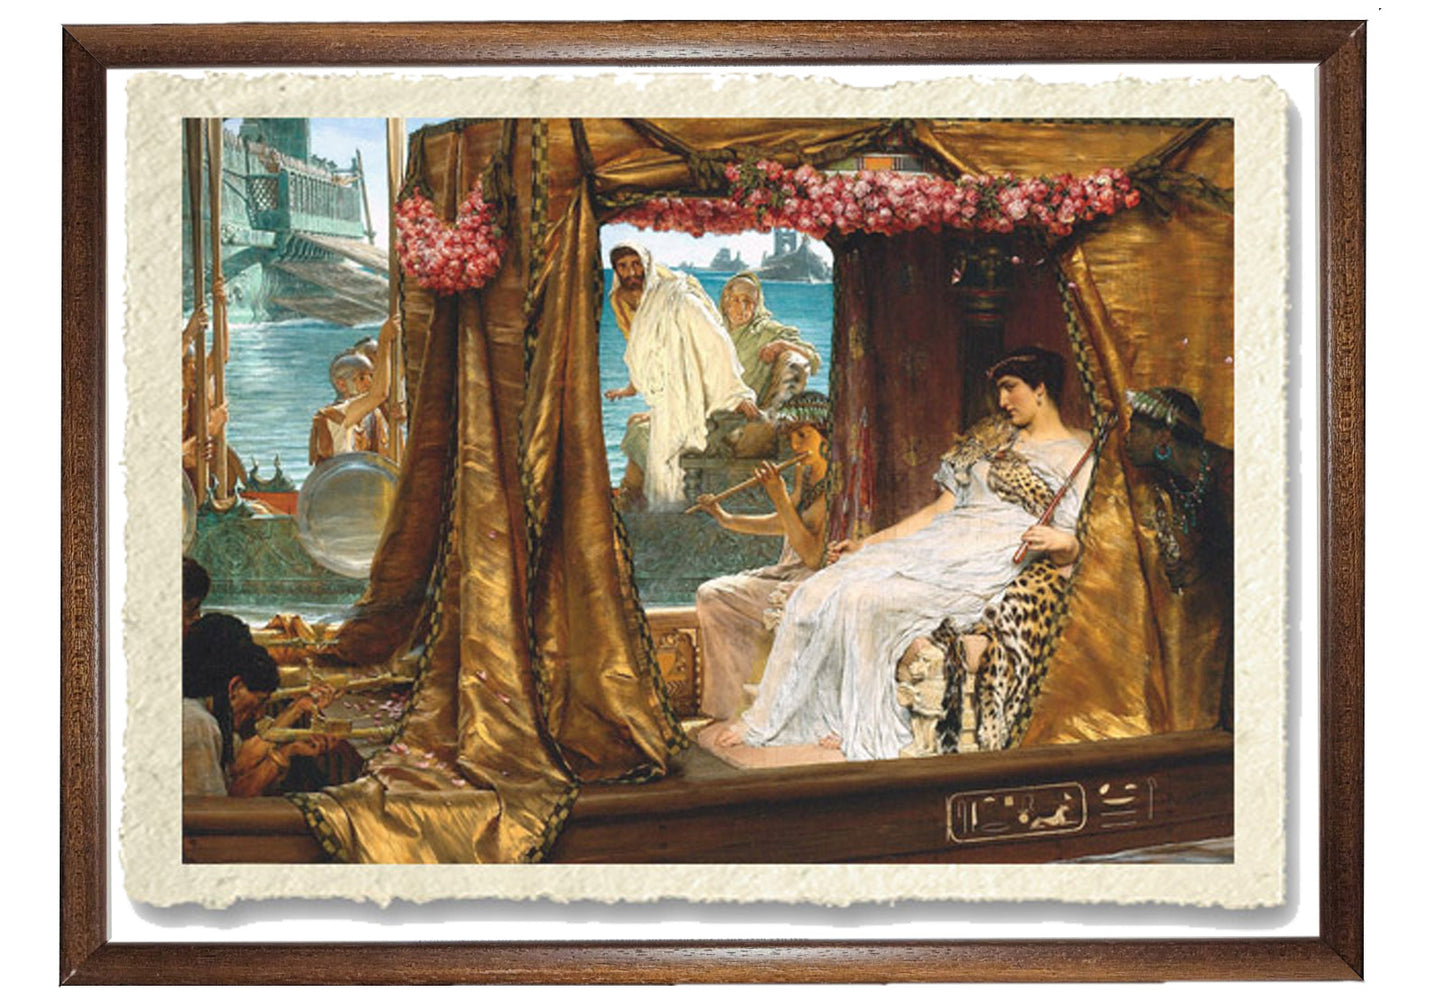 Antonio e Cleopatra di Lawrence Alma-Tadema